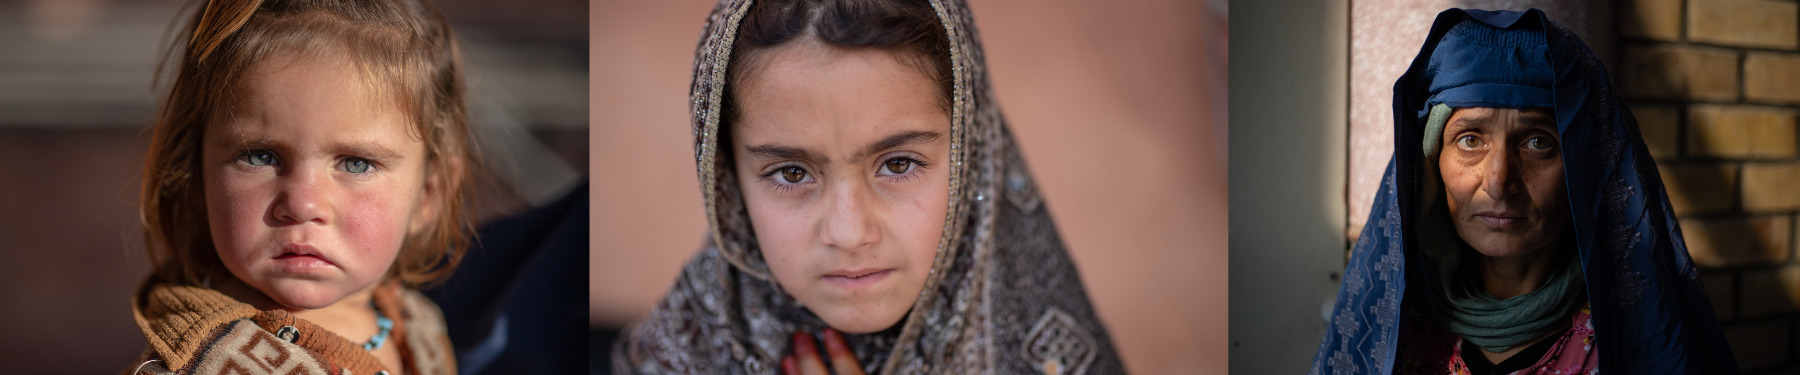 Frauen und Kinder in Afghanistan. Credit: UN Women/Sayed Bidel